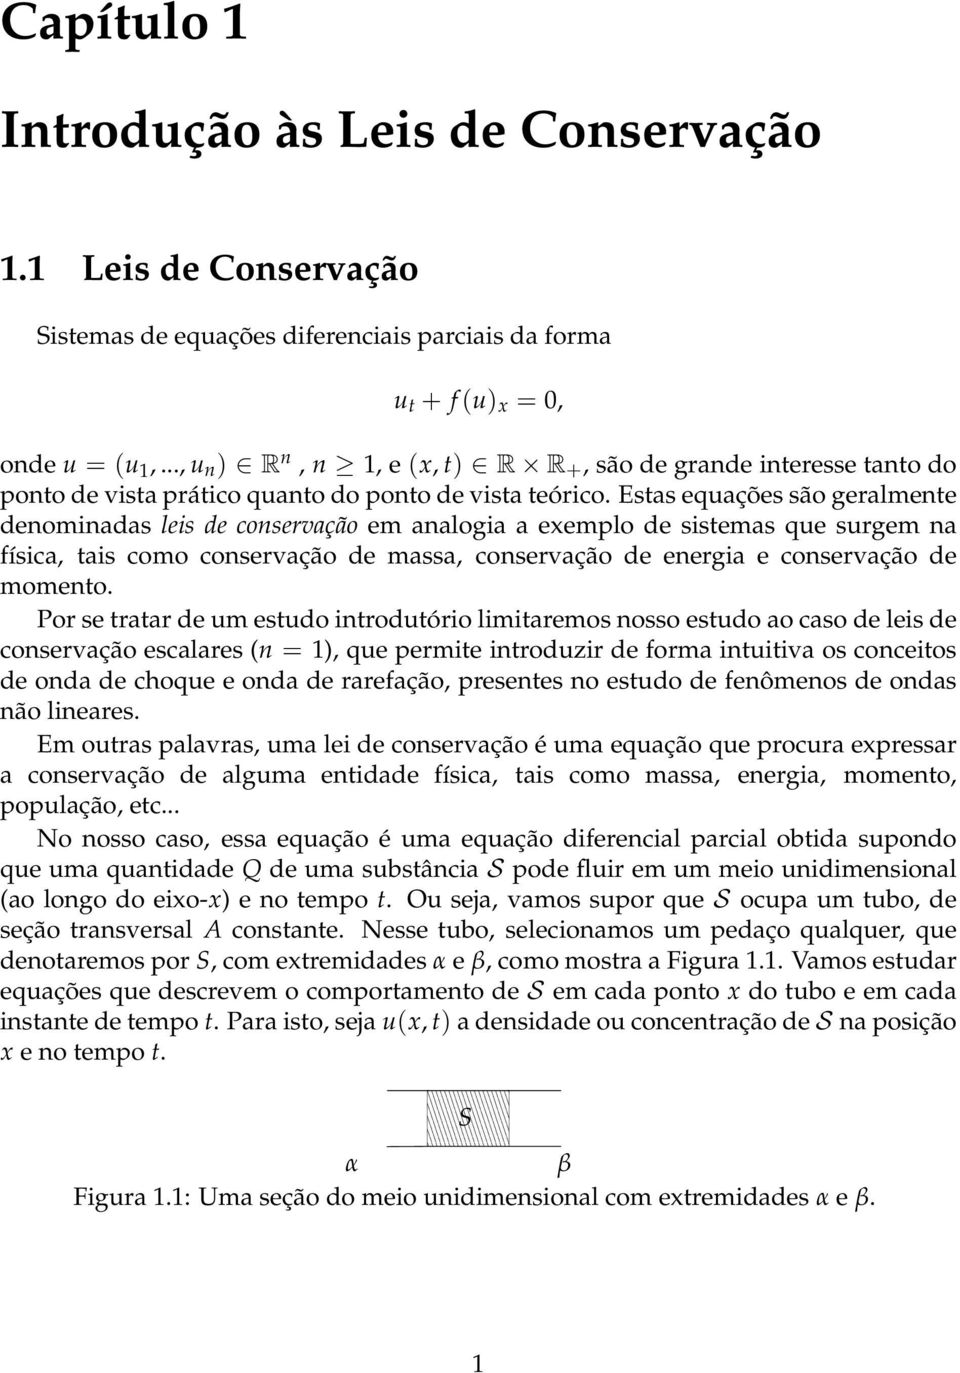 Estas equações são geralmente denominadas leis de conservação em analogia a exemplo de sistemas que surgem na física, tais como conservação de massa, conservação de energia e conservação de momento.